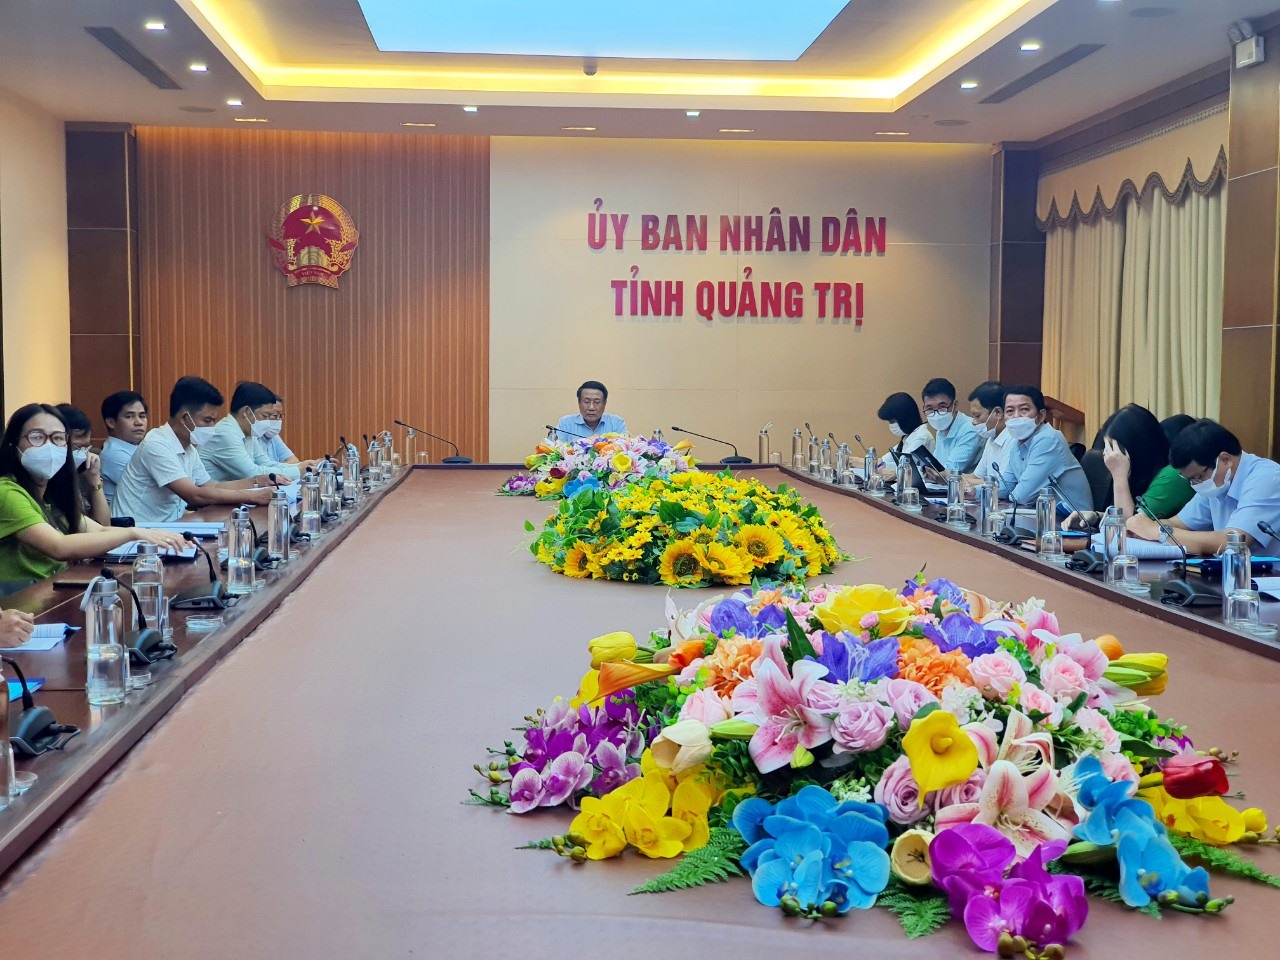 Phó Chủ tịch Thường trực UBND tỉnh Hà Sỹ Đồng dự hội nghị tại điểm cầu Quảng Trị - Ảnh: T.T